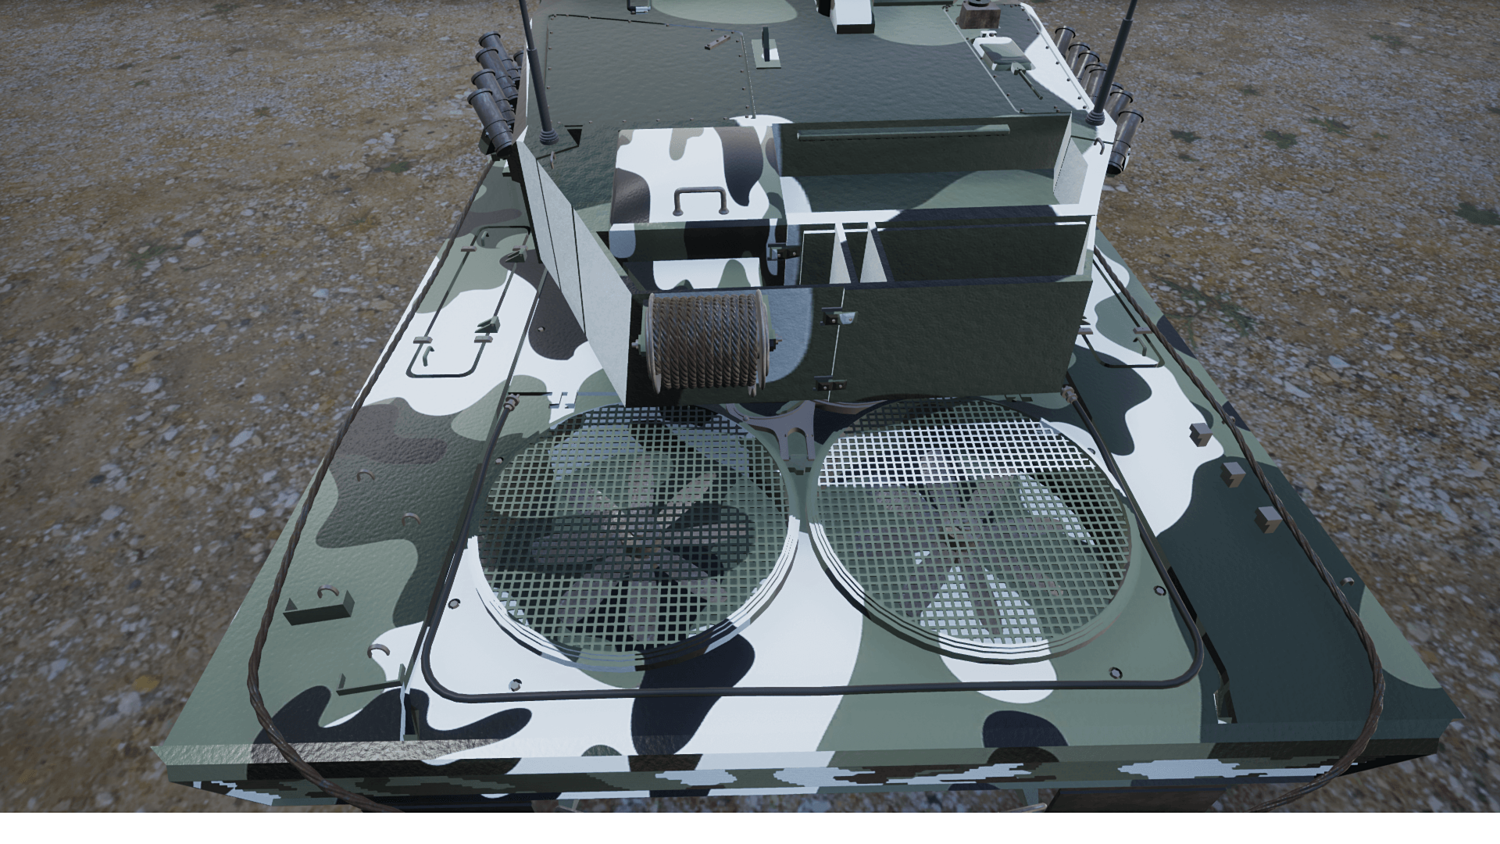 Main Battle Tanks Pack for UE4